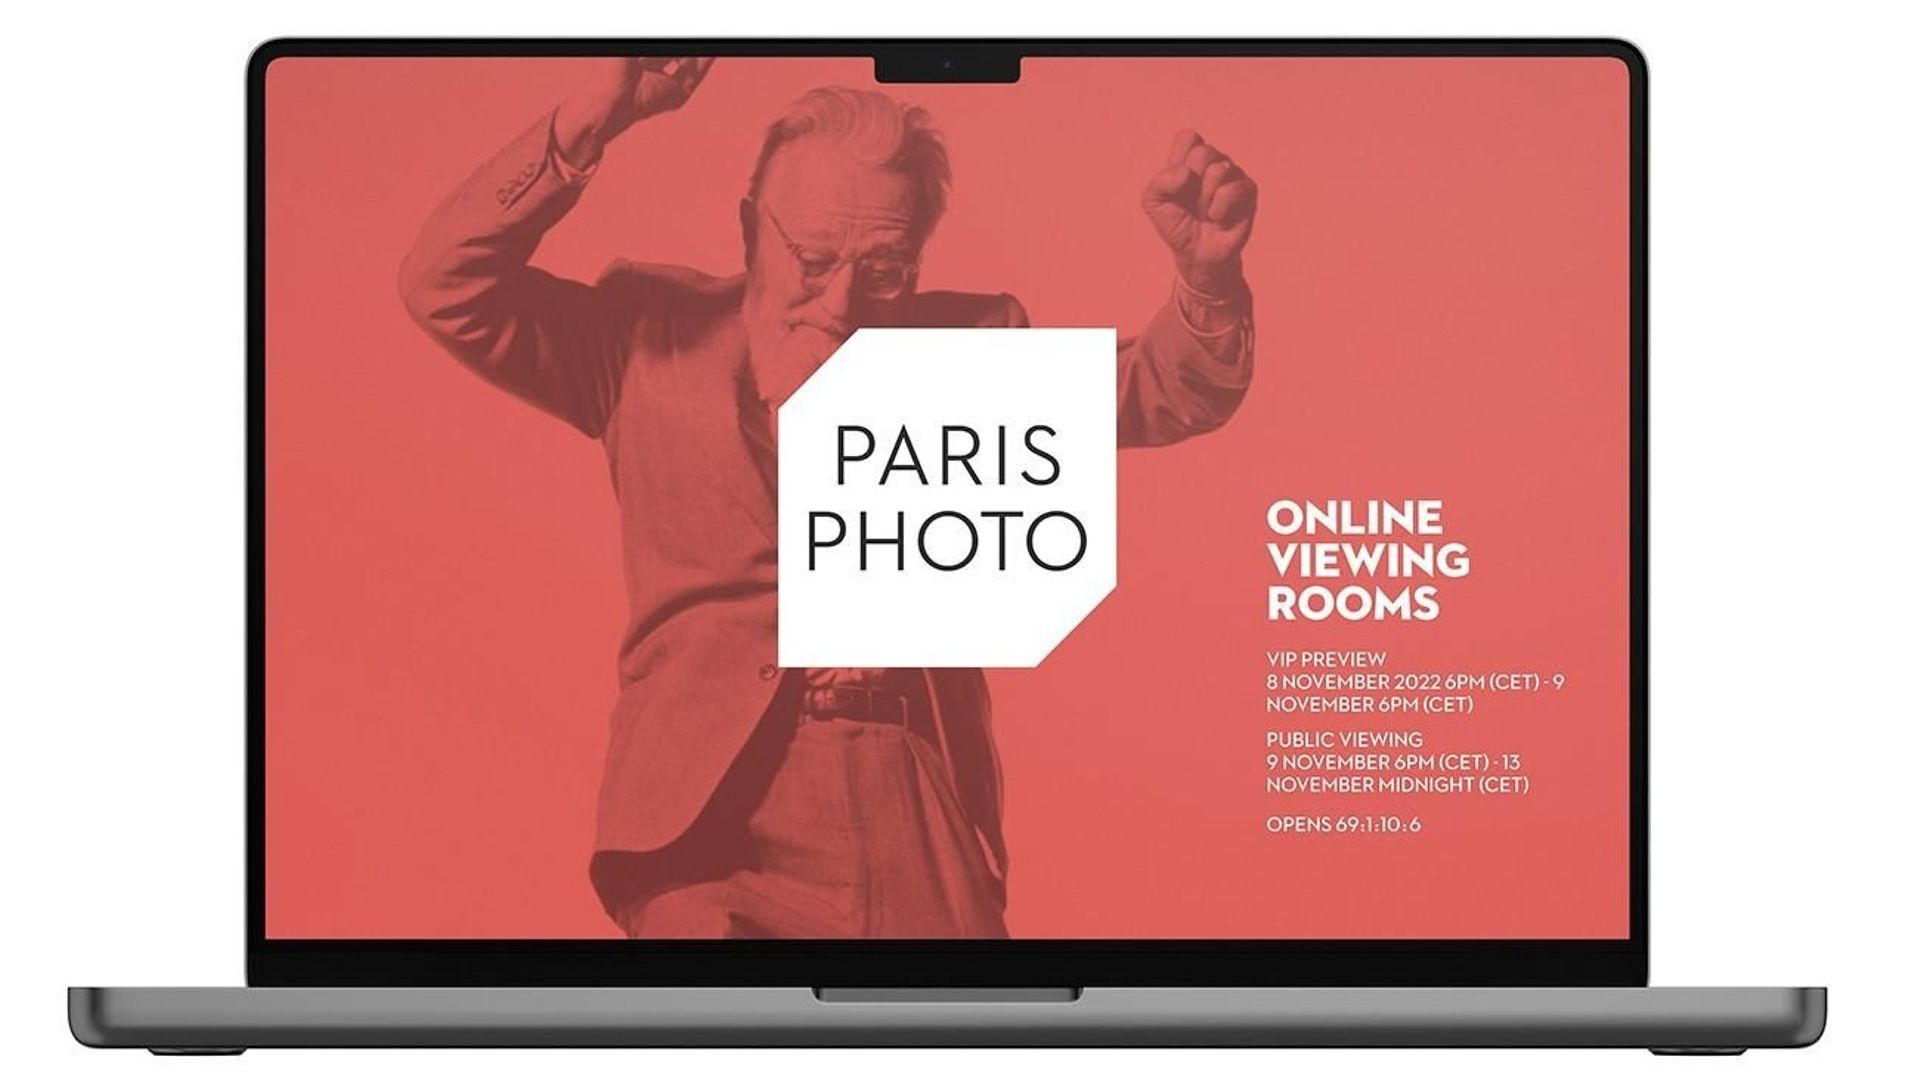 Paris Photo Online viewing rooms